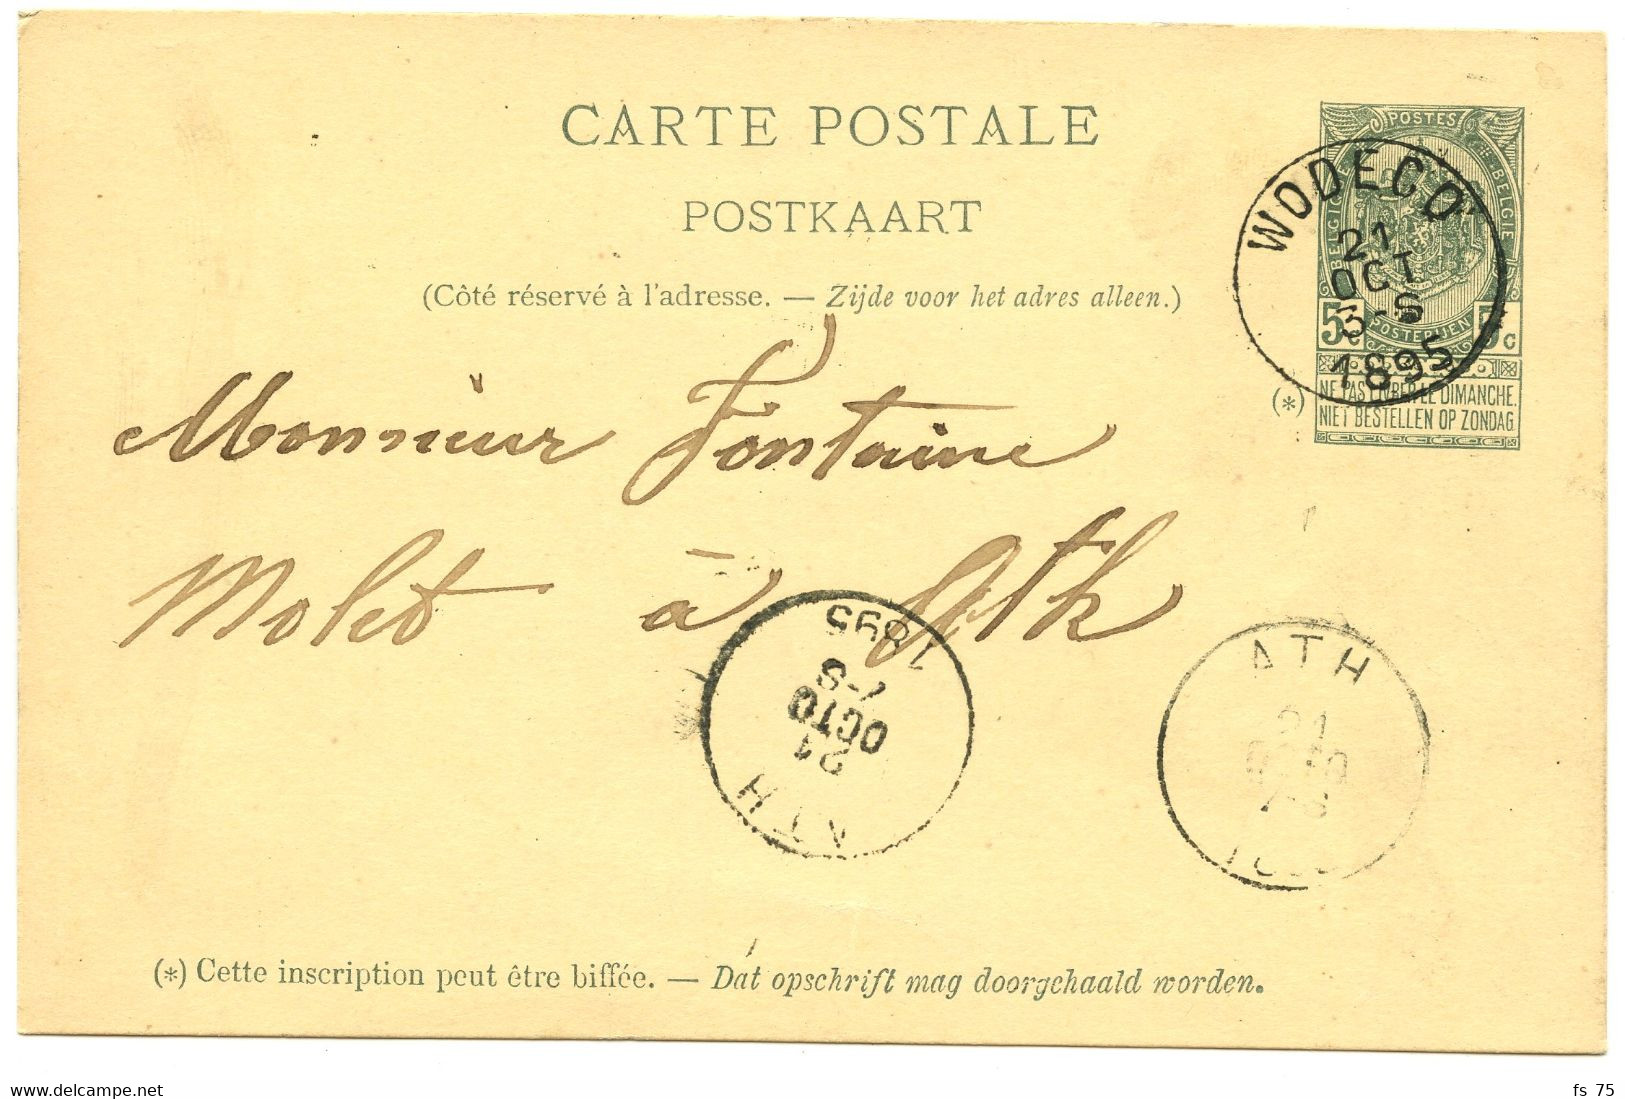 BELGIQUE - ENTIER 5C ARMOIRIES SIMPLE CERCLE WODECQ SUR CARTE POSTALE, 1895 - Cartes Postales 1871-1909